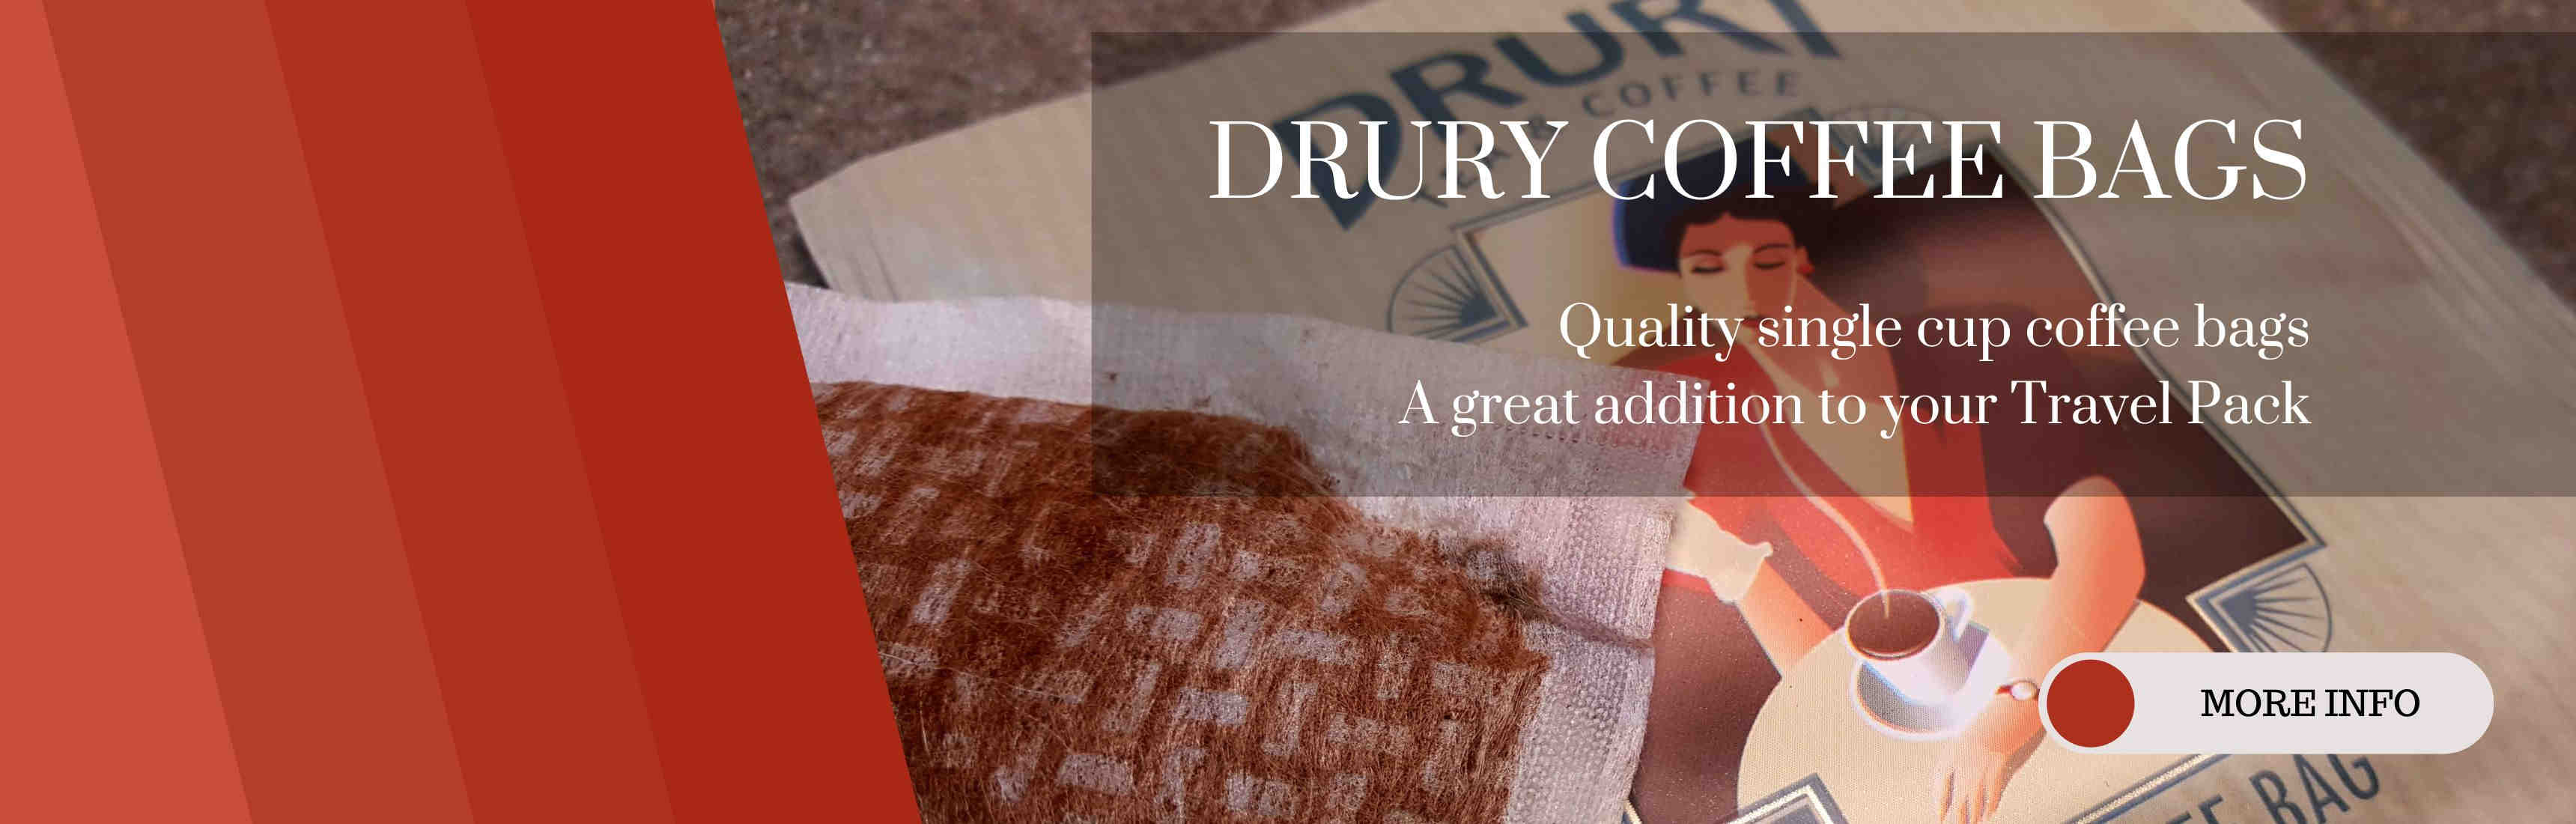 Drury Coffee Bags Banner